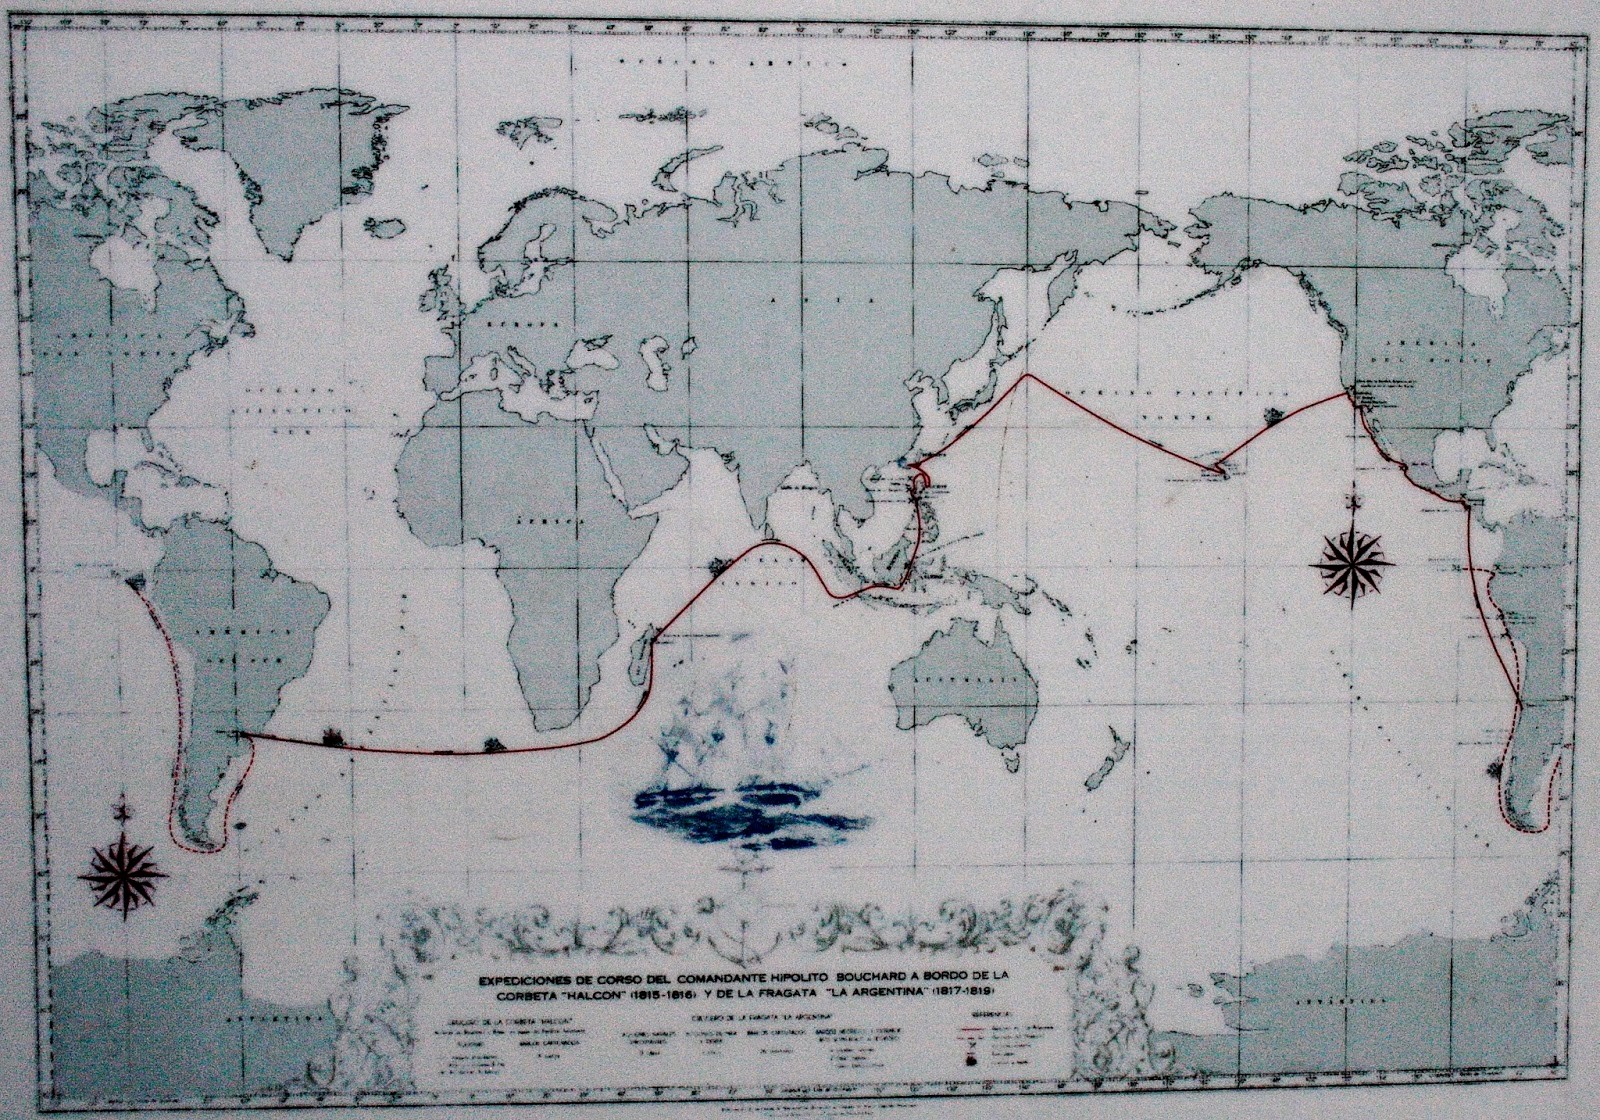 Le tour du monde de Bouchard, au cours duquel il se montra sanguinaire, notamment sur les côtes californiennes et en Méso-Amérique.